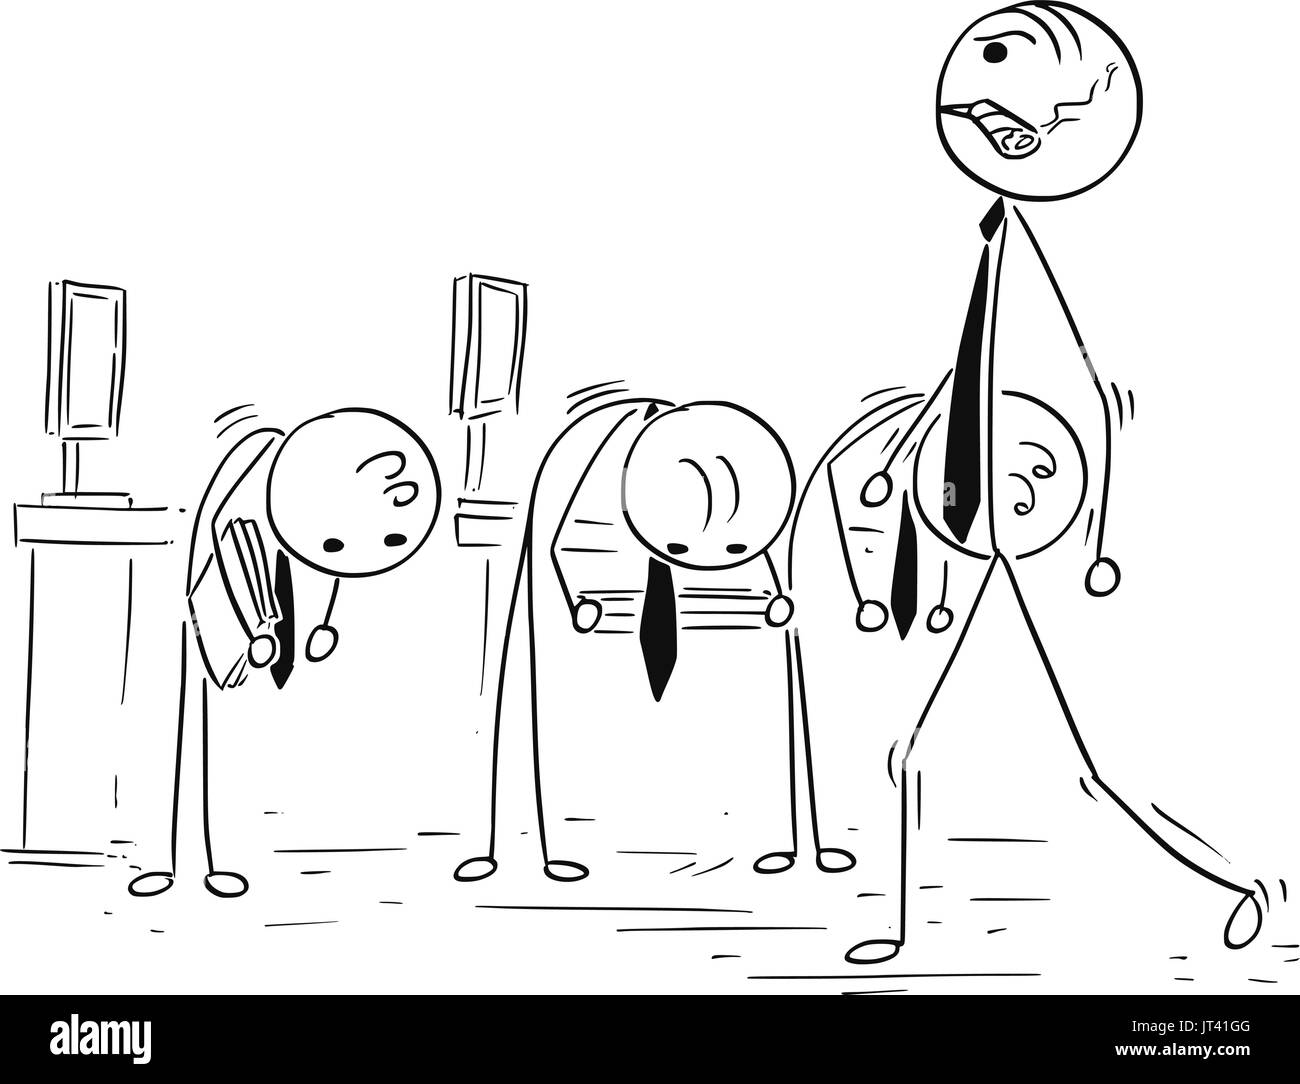 Ilustración vectorial de dibujos animados stick hombre enojado en manager o jefe caminando con gran cigarro empleados subordinados y reverencia Ilustración del Vector